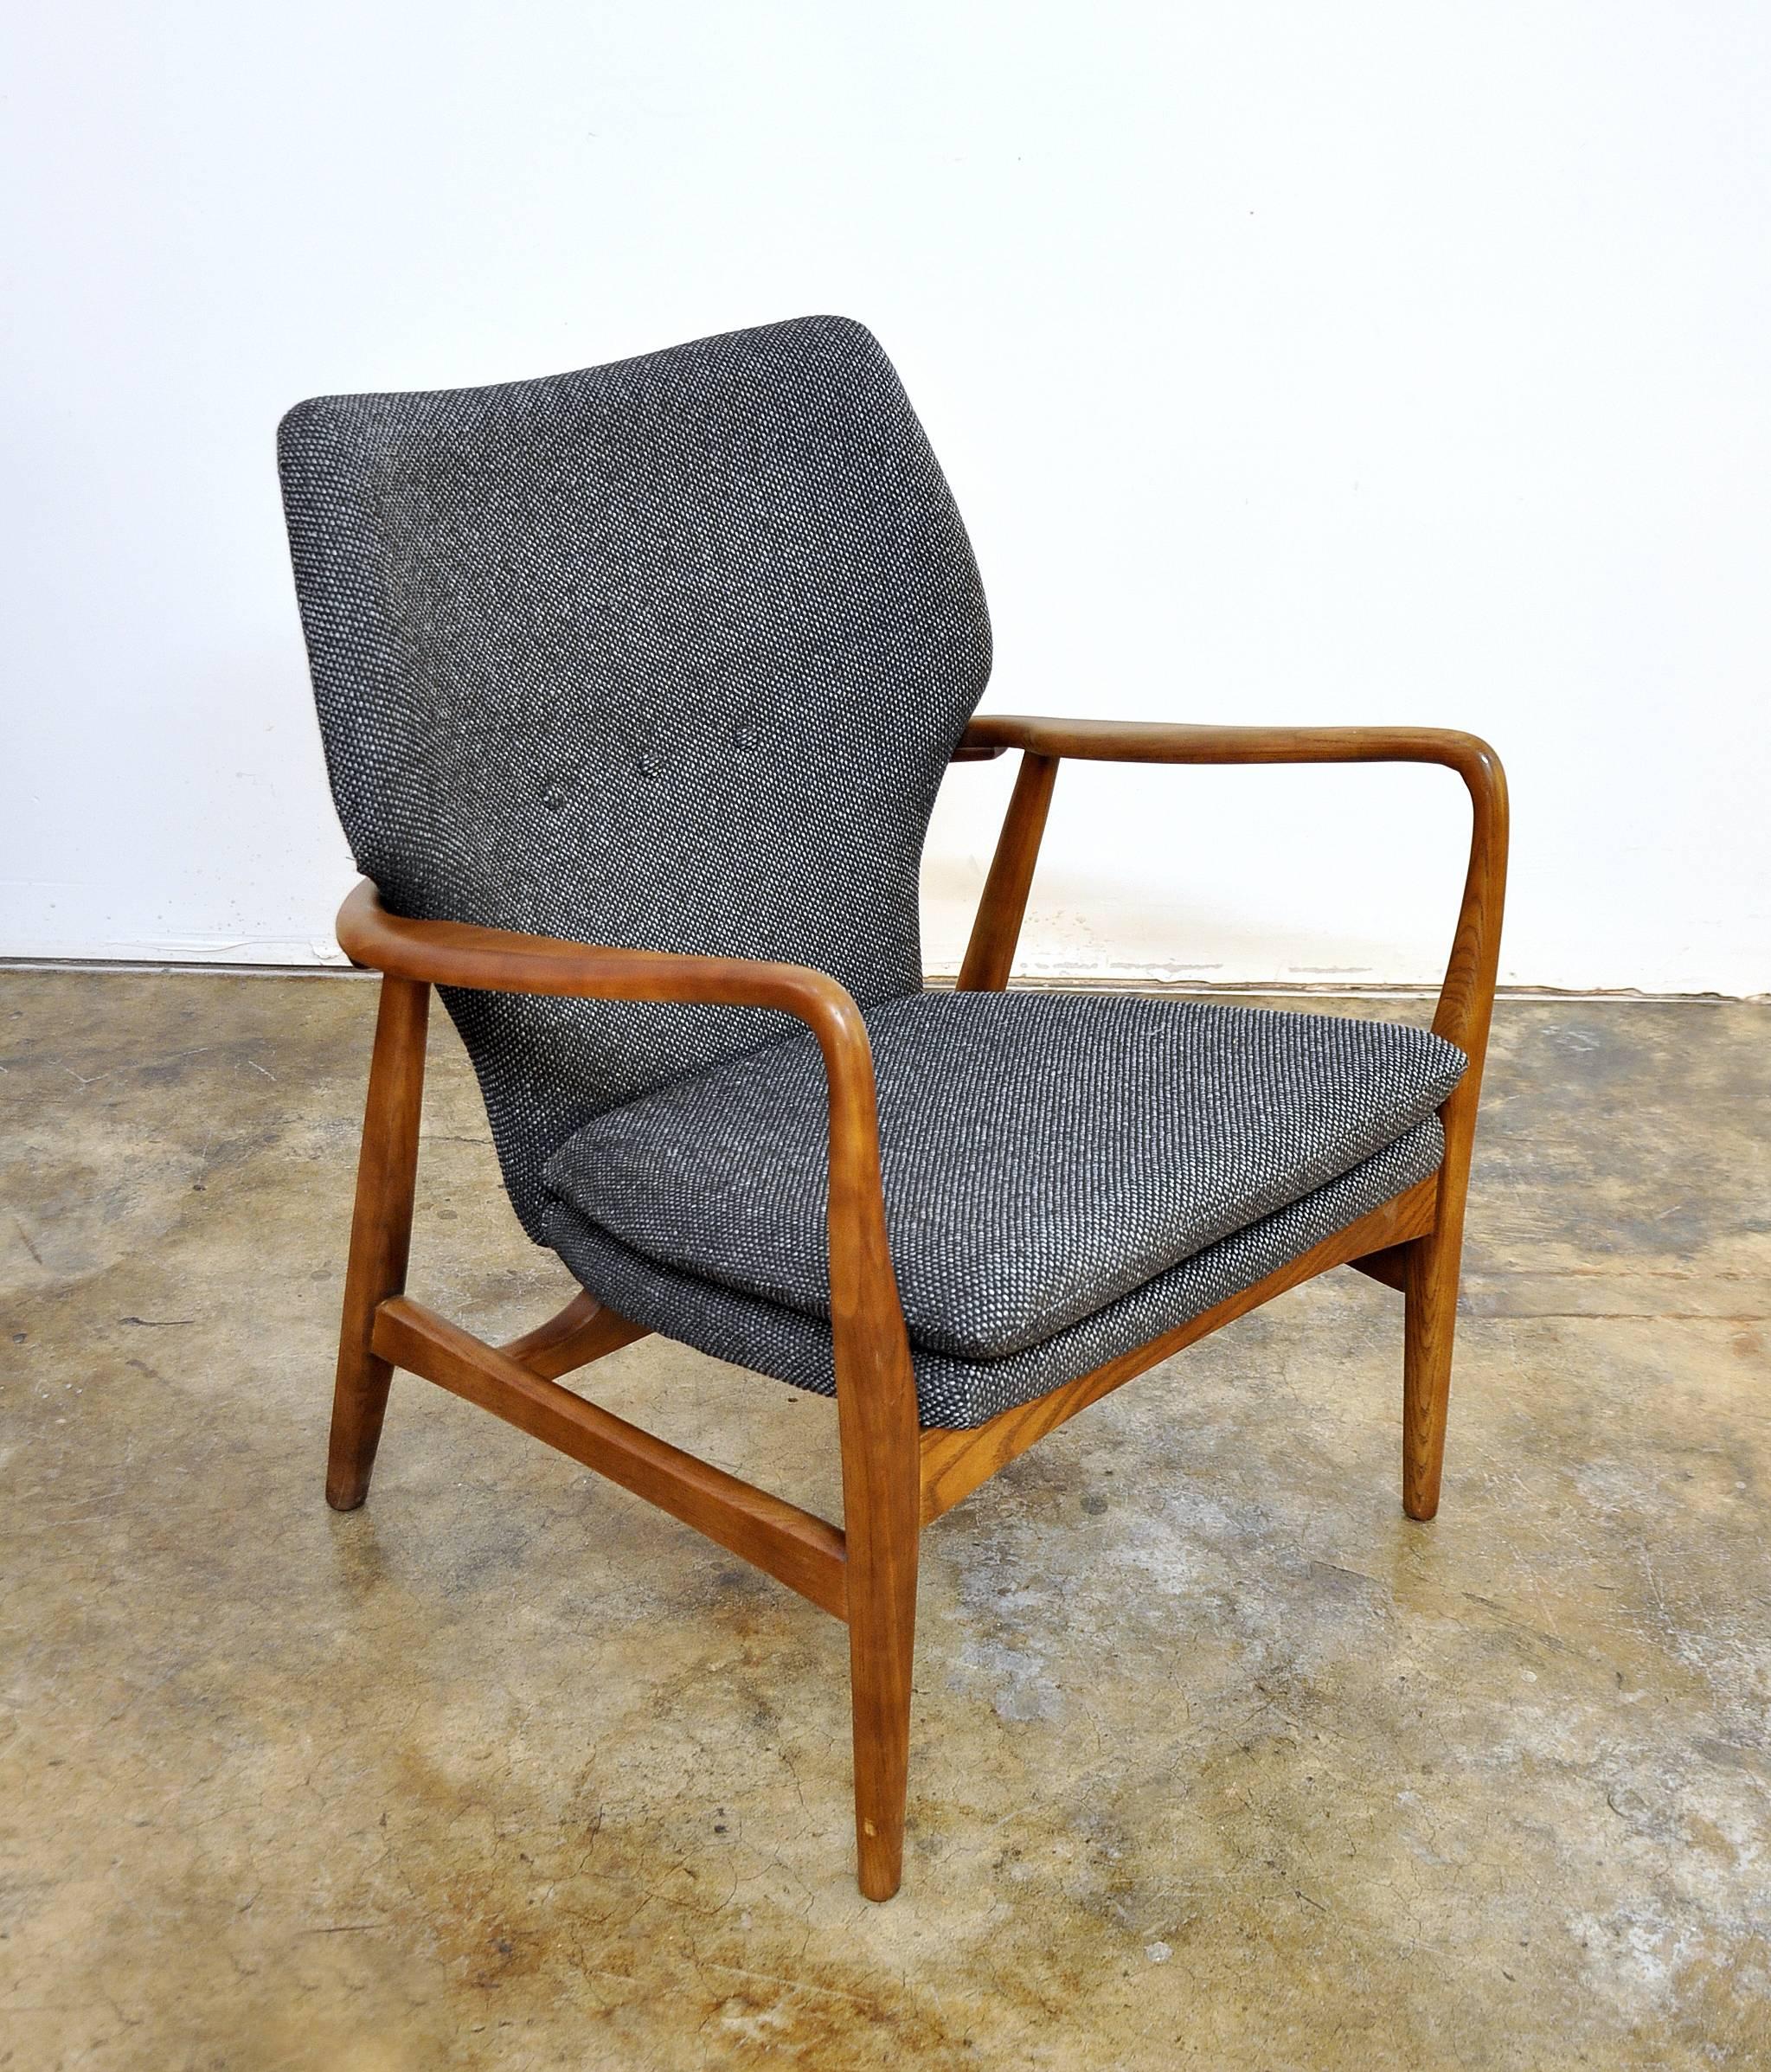 Scandinavian Modern Madsen and Schubell Lounge Chair and Ottoman, Denmark, circa 1955